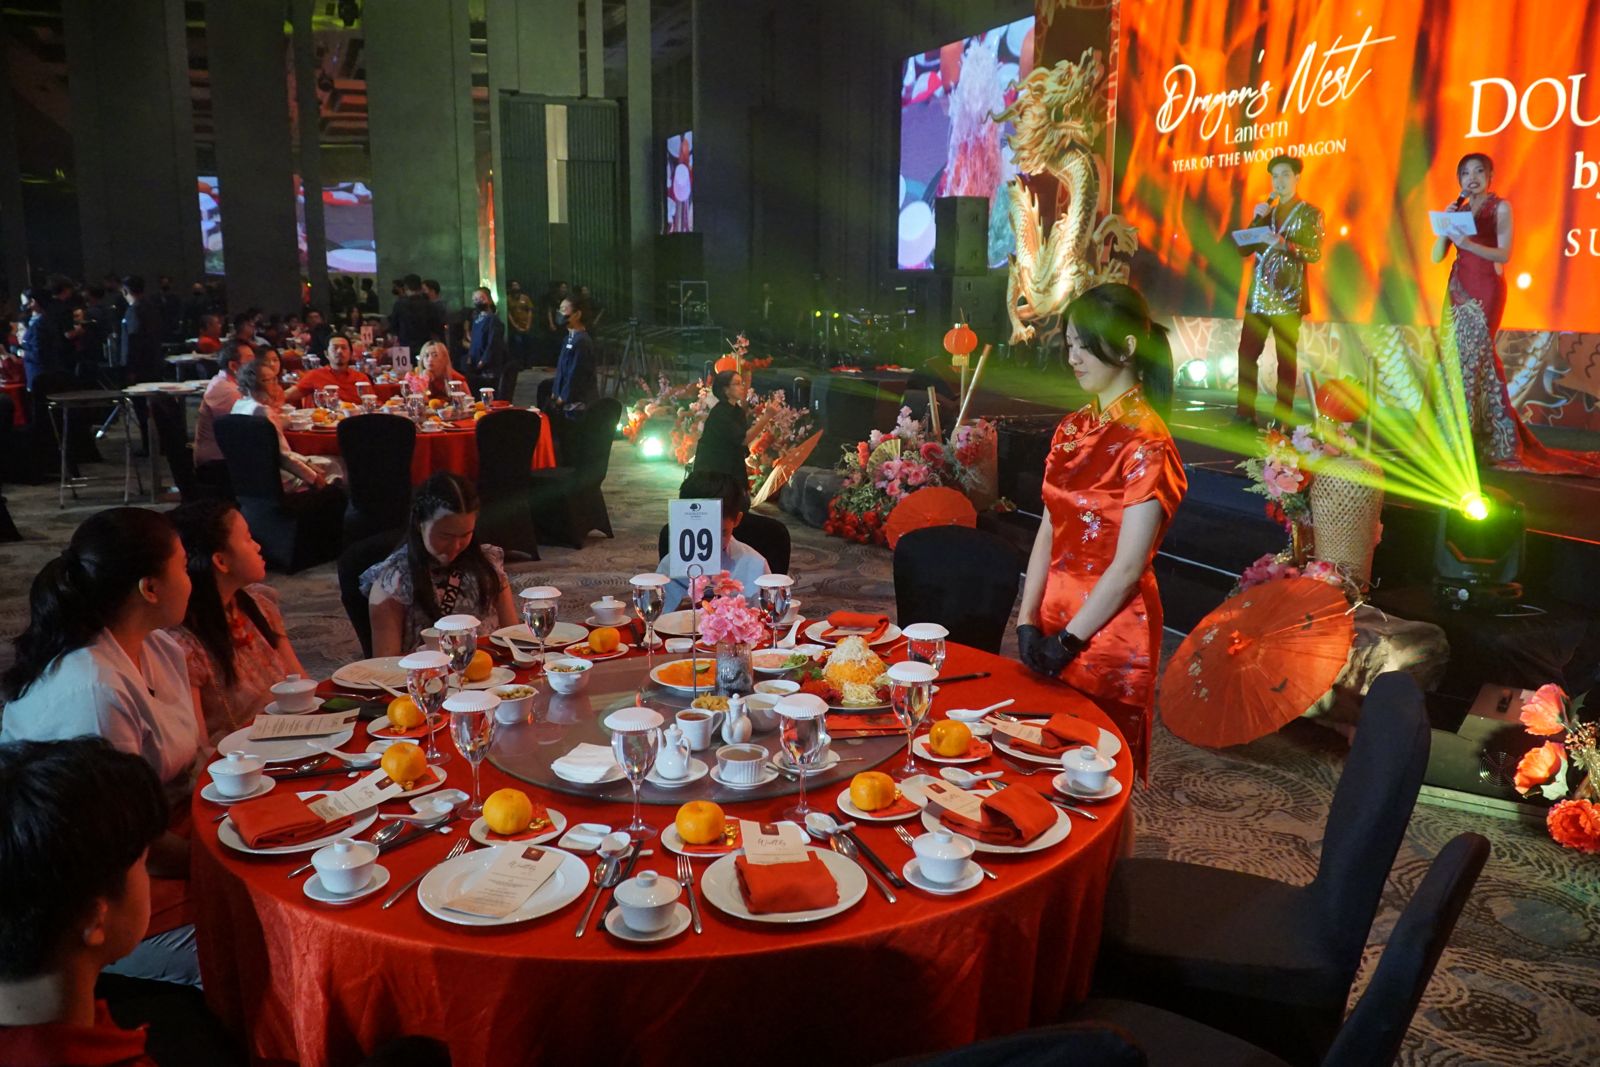 Mewah! Gala Dinner Bertema Naga di Malam Tahun Baru Naga Kayu Digelar Perdana